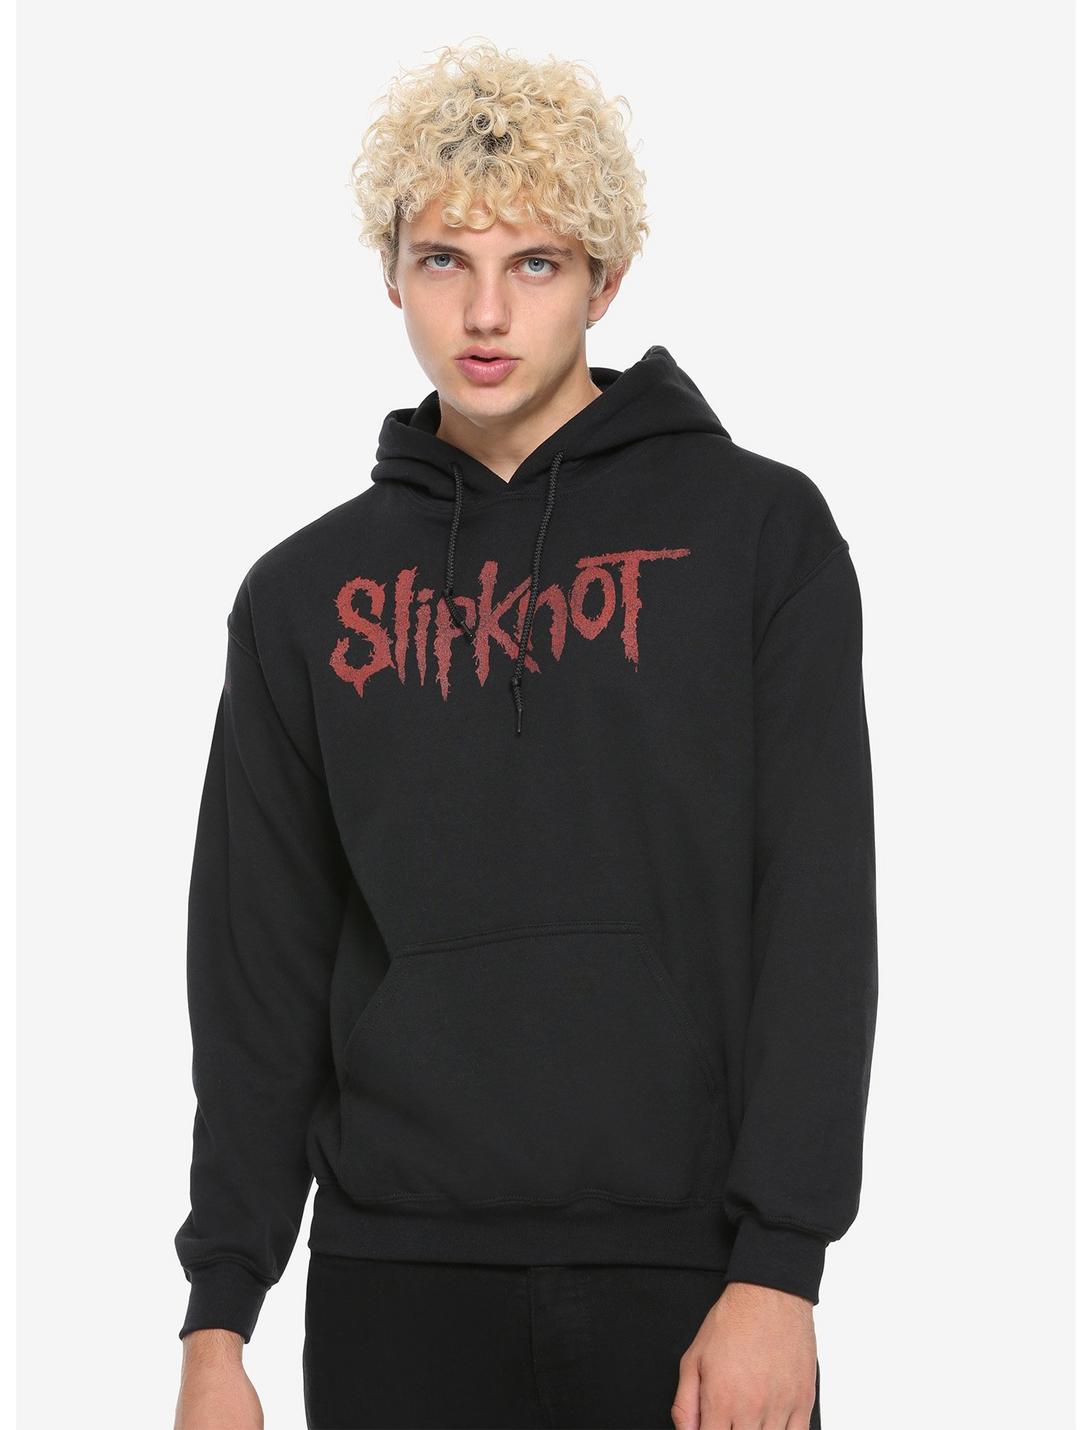 Slipknot Group Portrait Black Hoodie, BLACK, hi-res